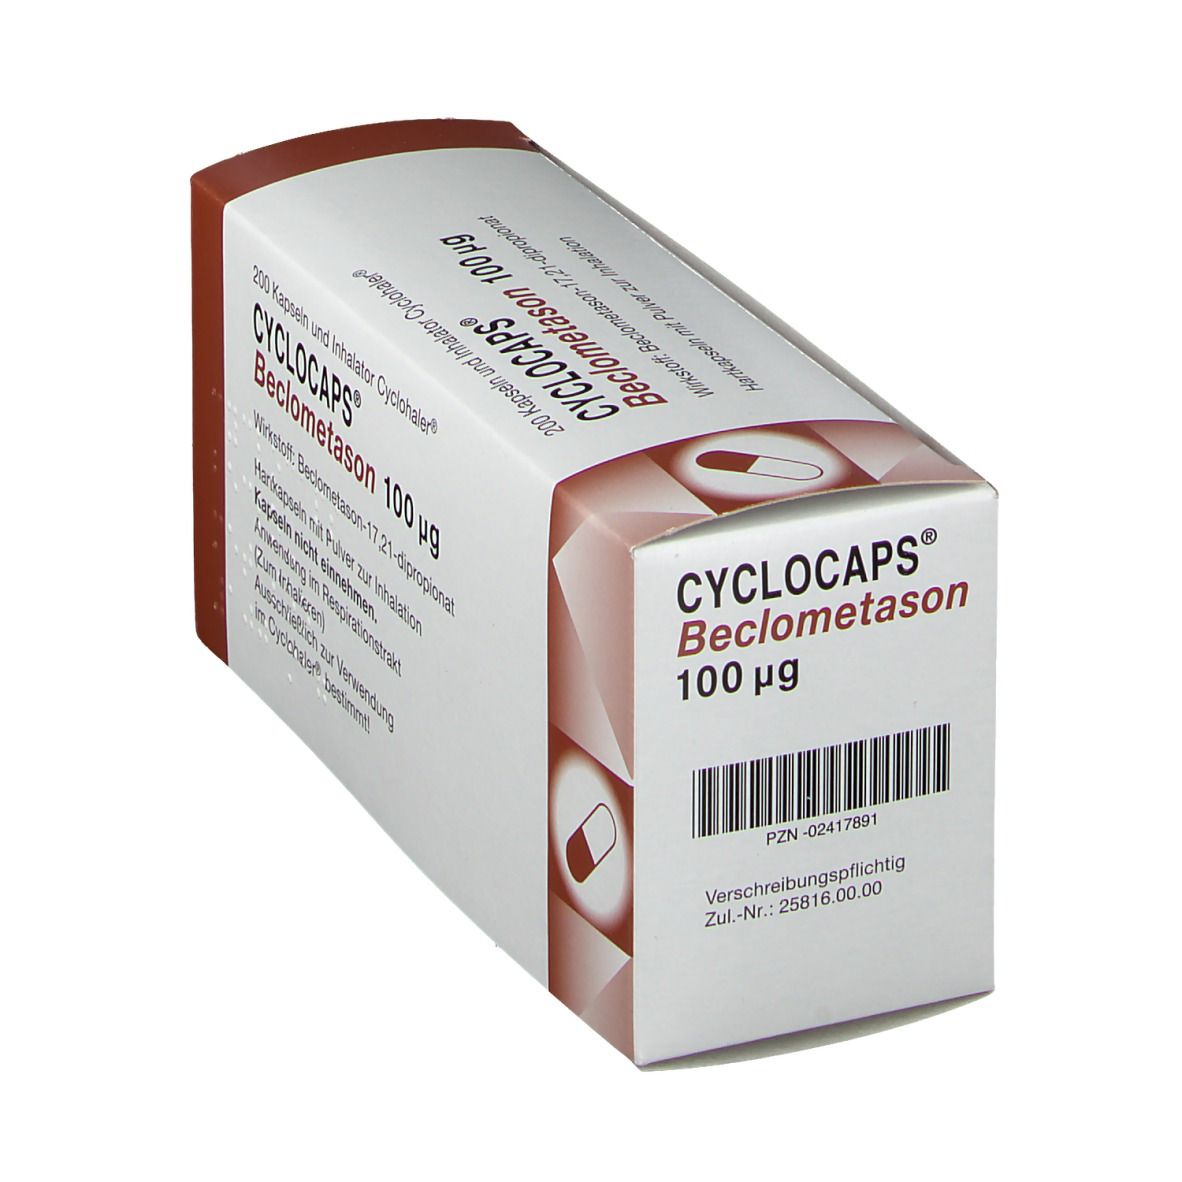 Cyclocaps Beclometason 100ug Inh.Kaps.+Cycloh.